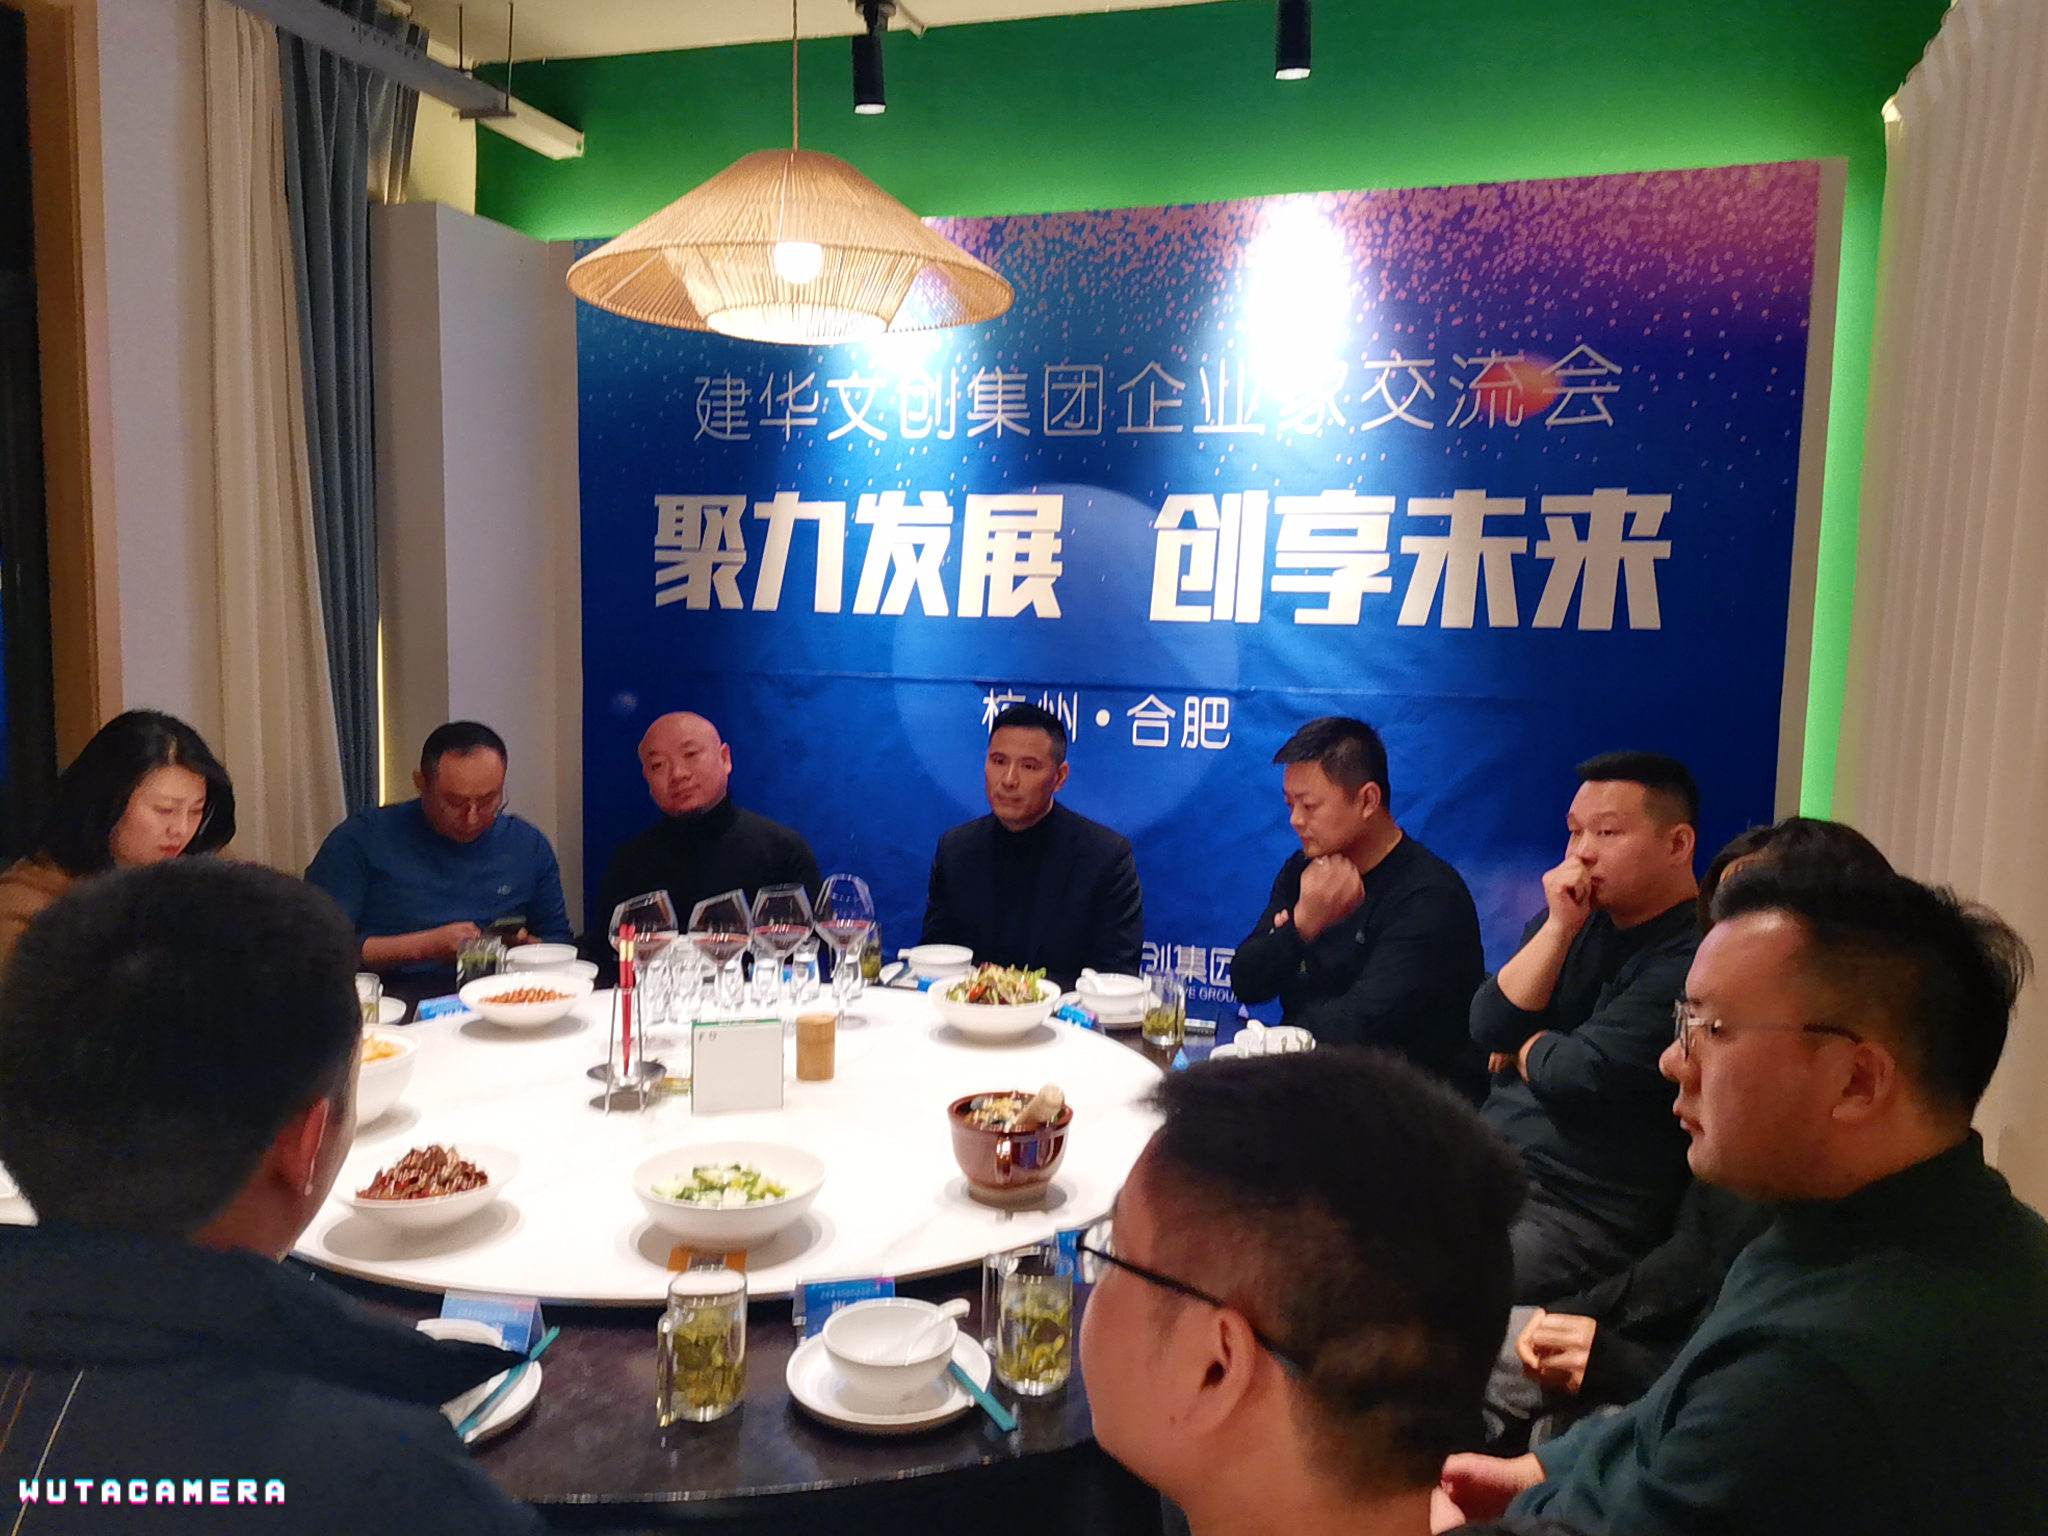 j9.com(中国区)官方网站文创集团举行第九期企业家交流会